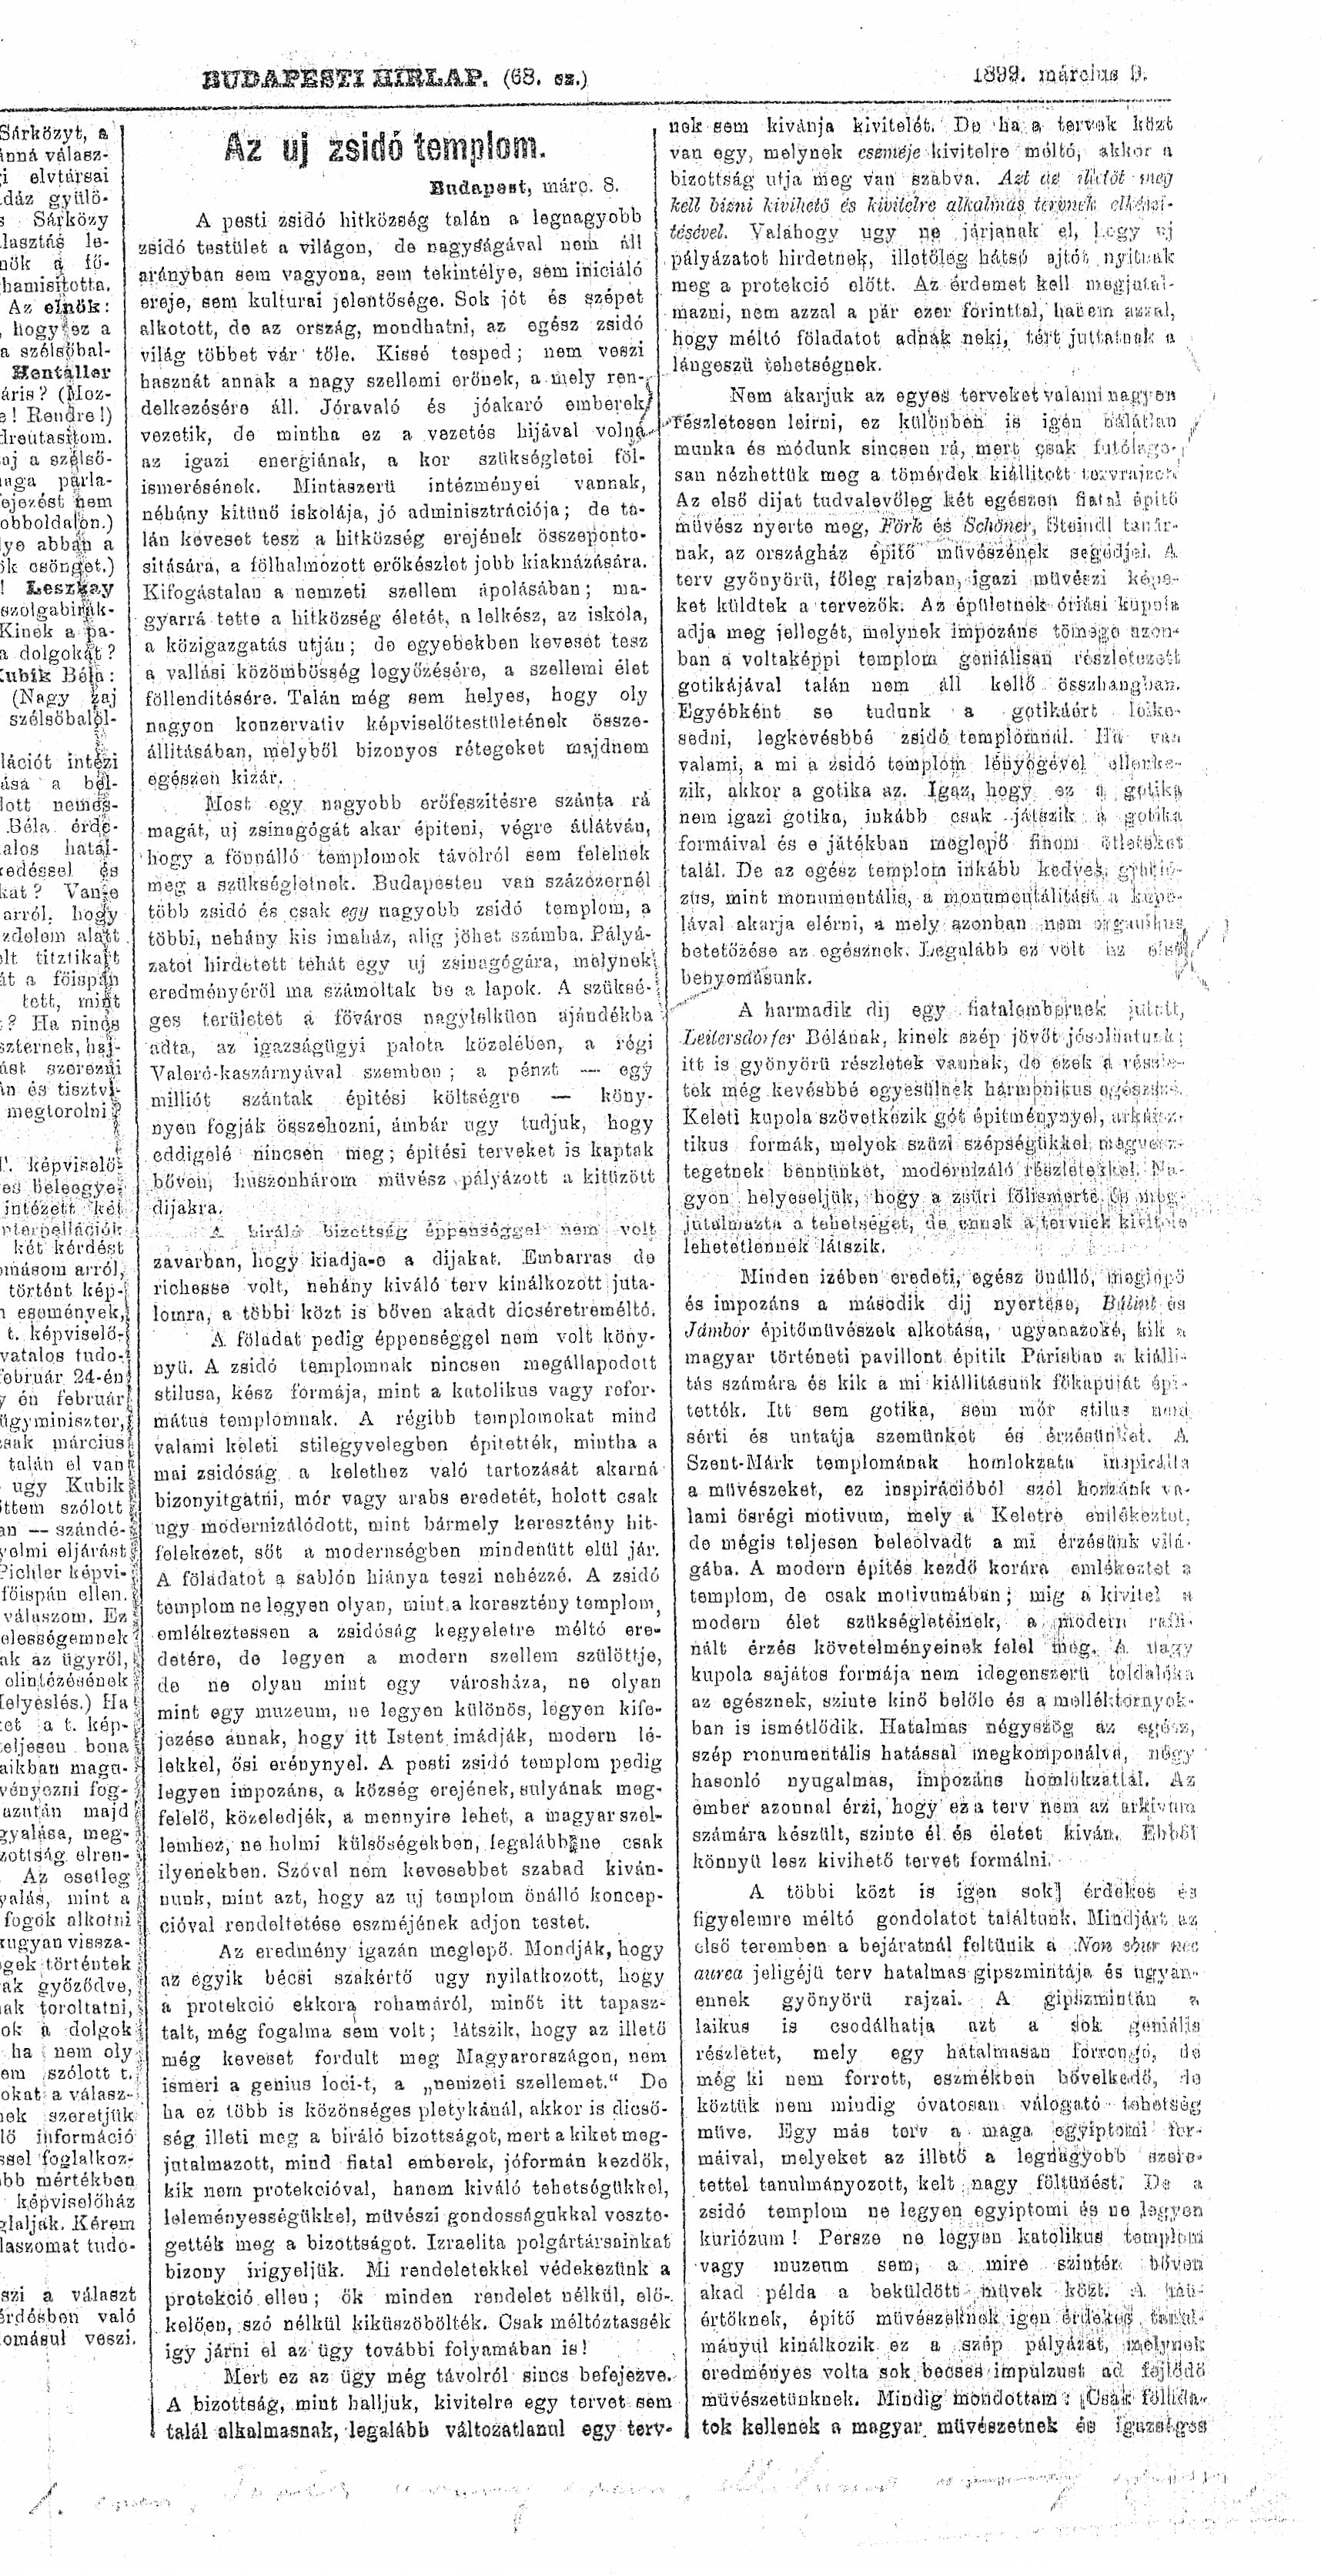 004_Budapesti Hírlap, 1899. III. 9. 6. p.